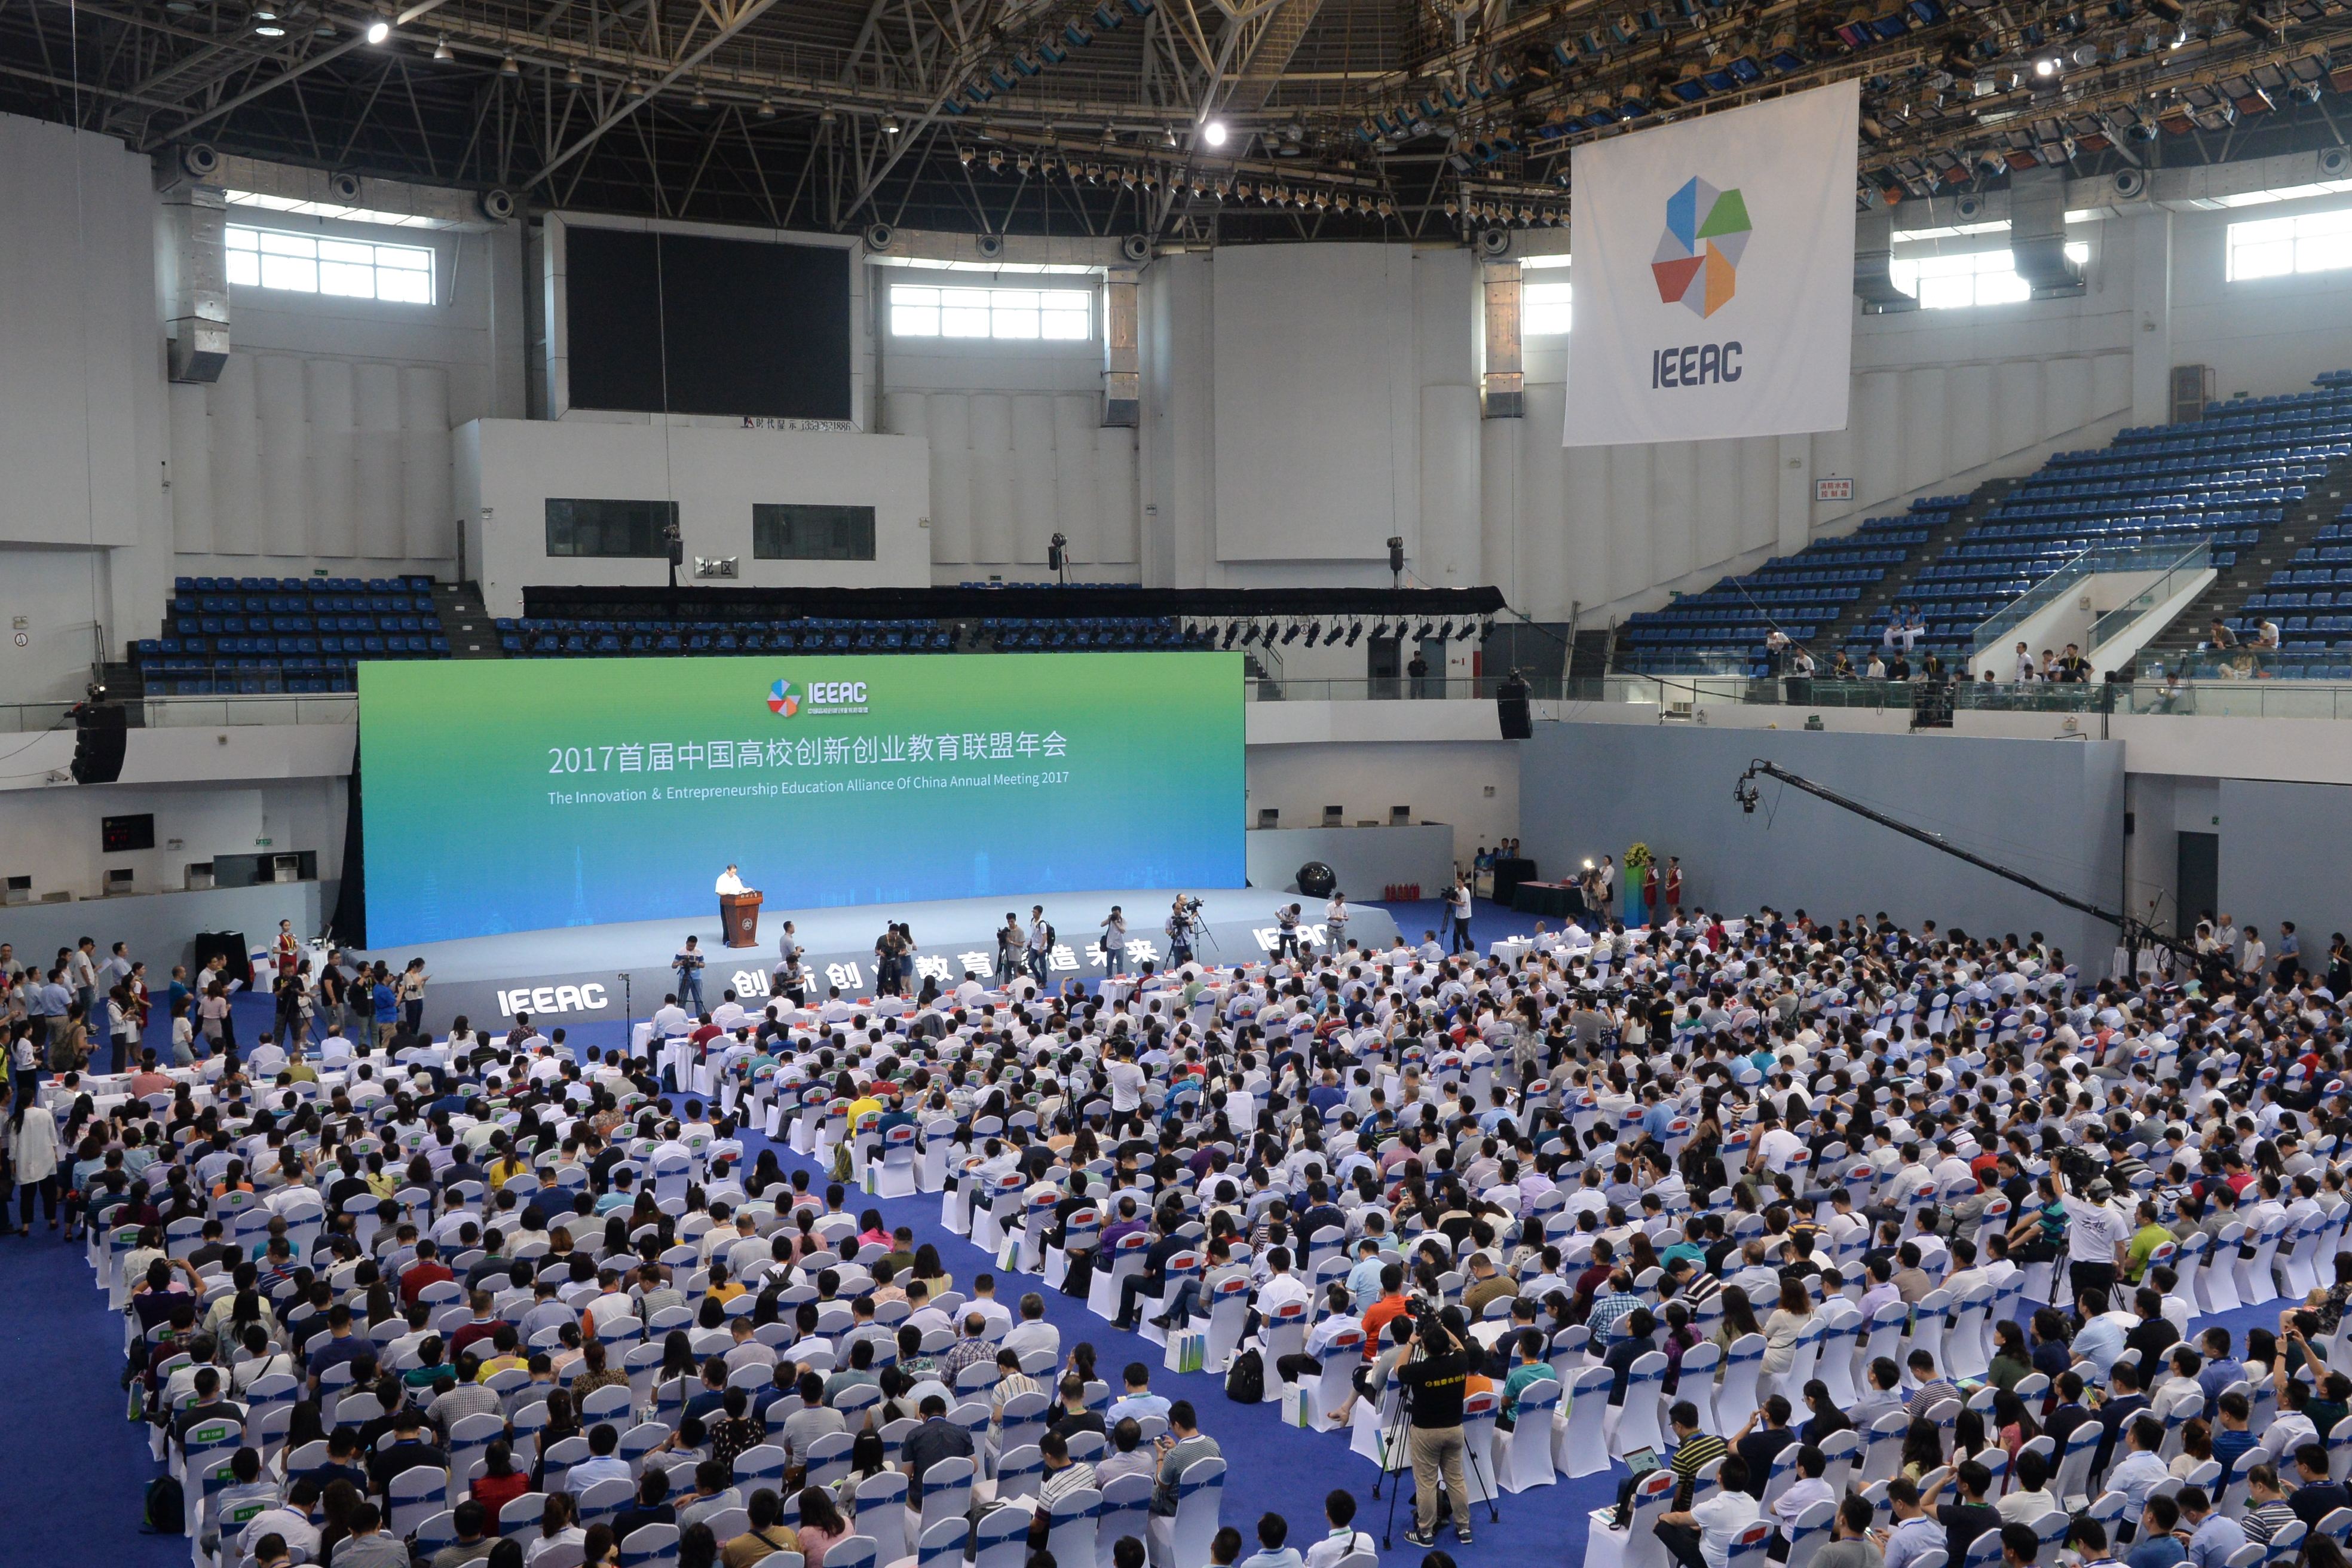 2017首屆中國高校創新創業教育聯盟年會在鄭州大學隆重開幕